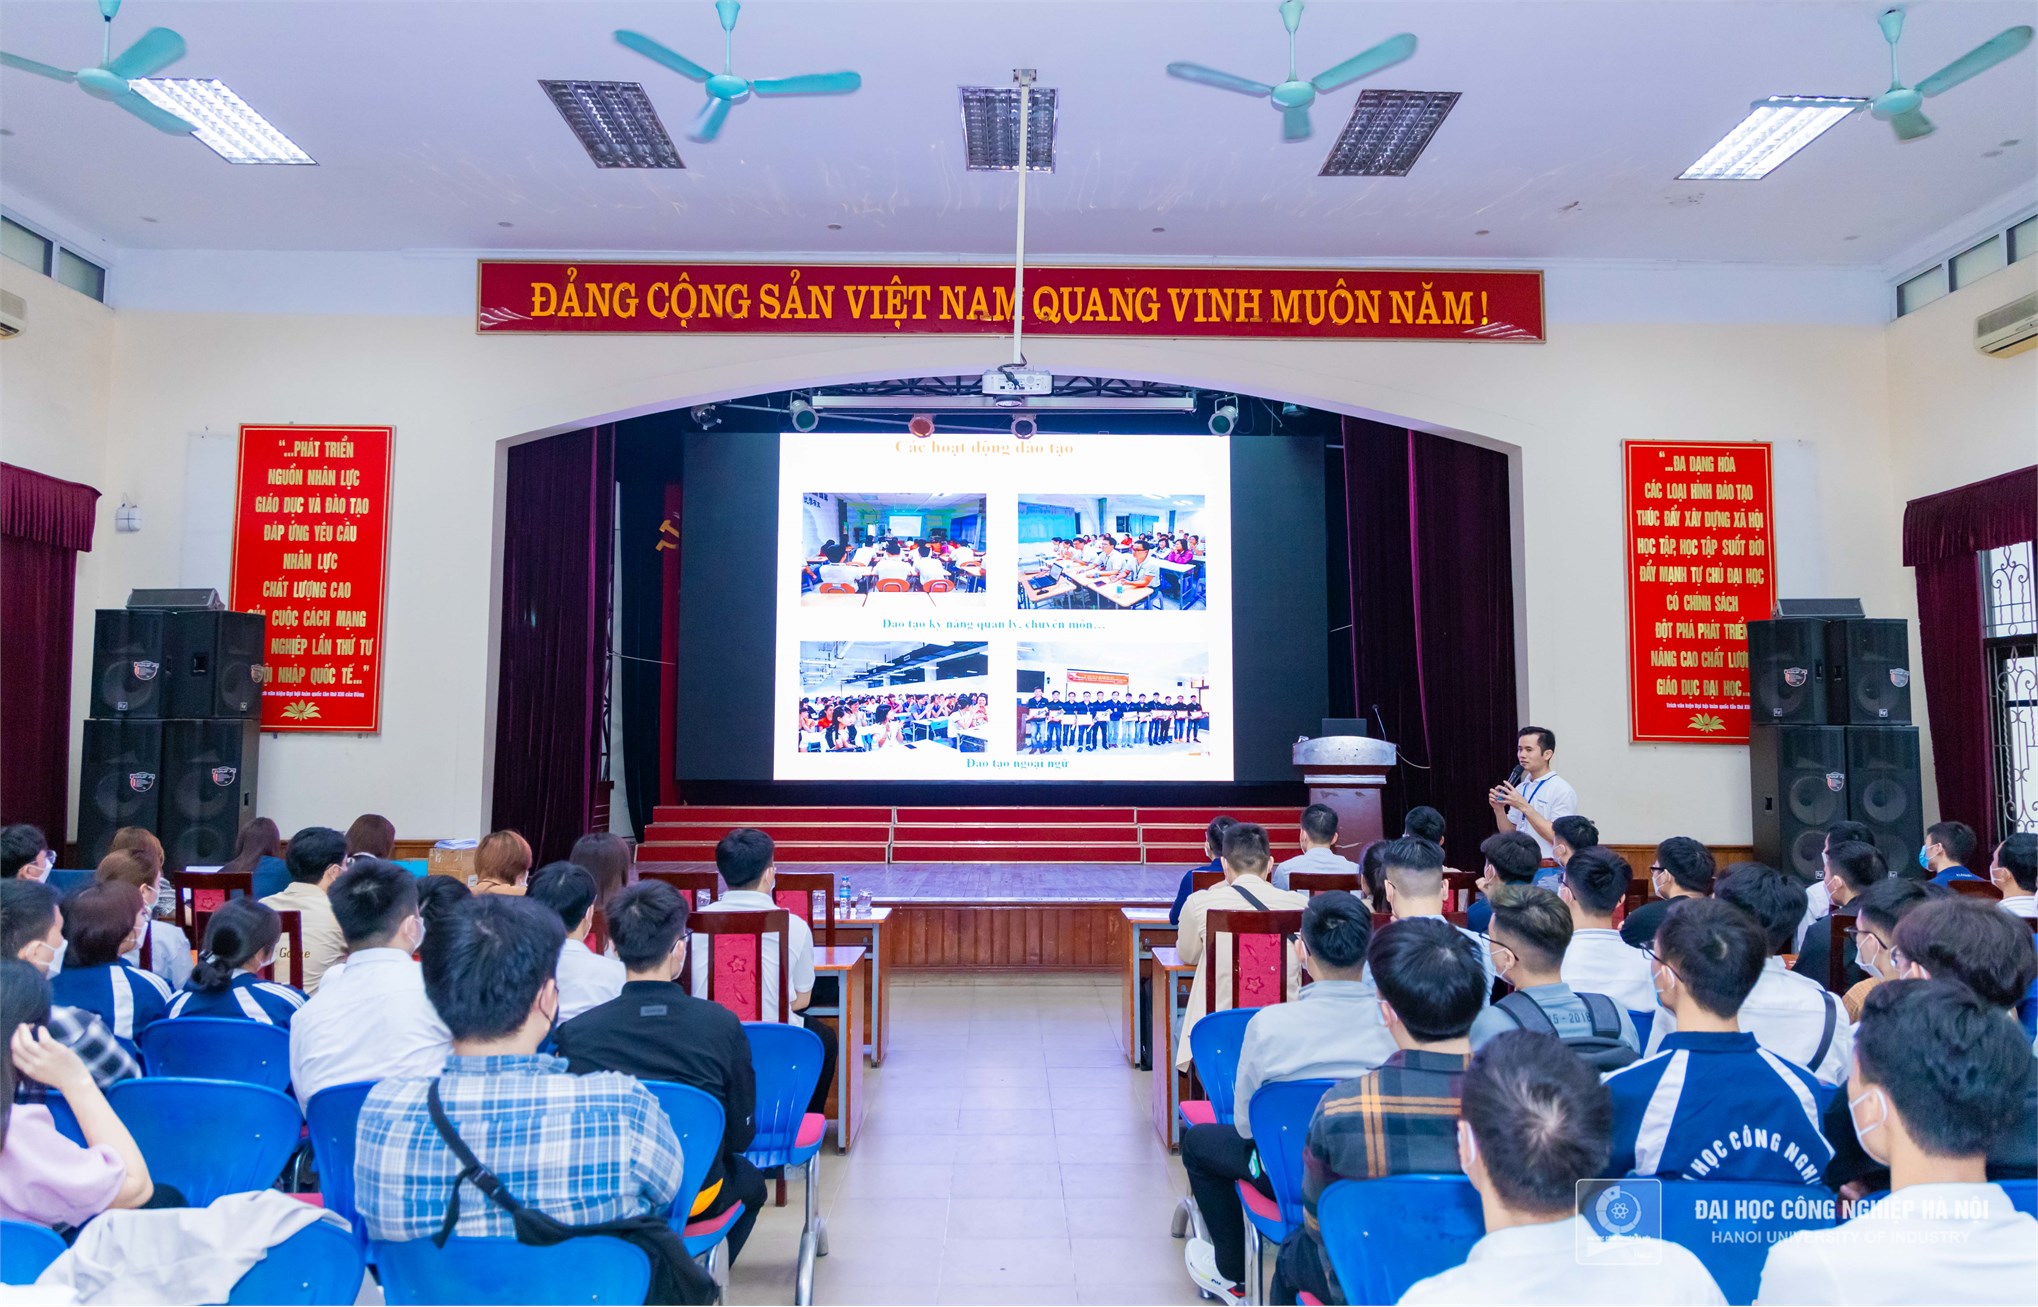 Sinh viên tham gia hội thảo tuyển dụng của Tập đoàn Khoa học kỹ thuật Hồng Hải (Foxconn)